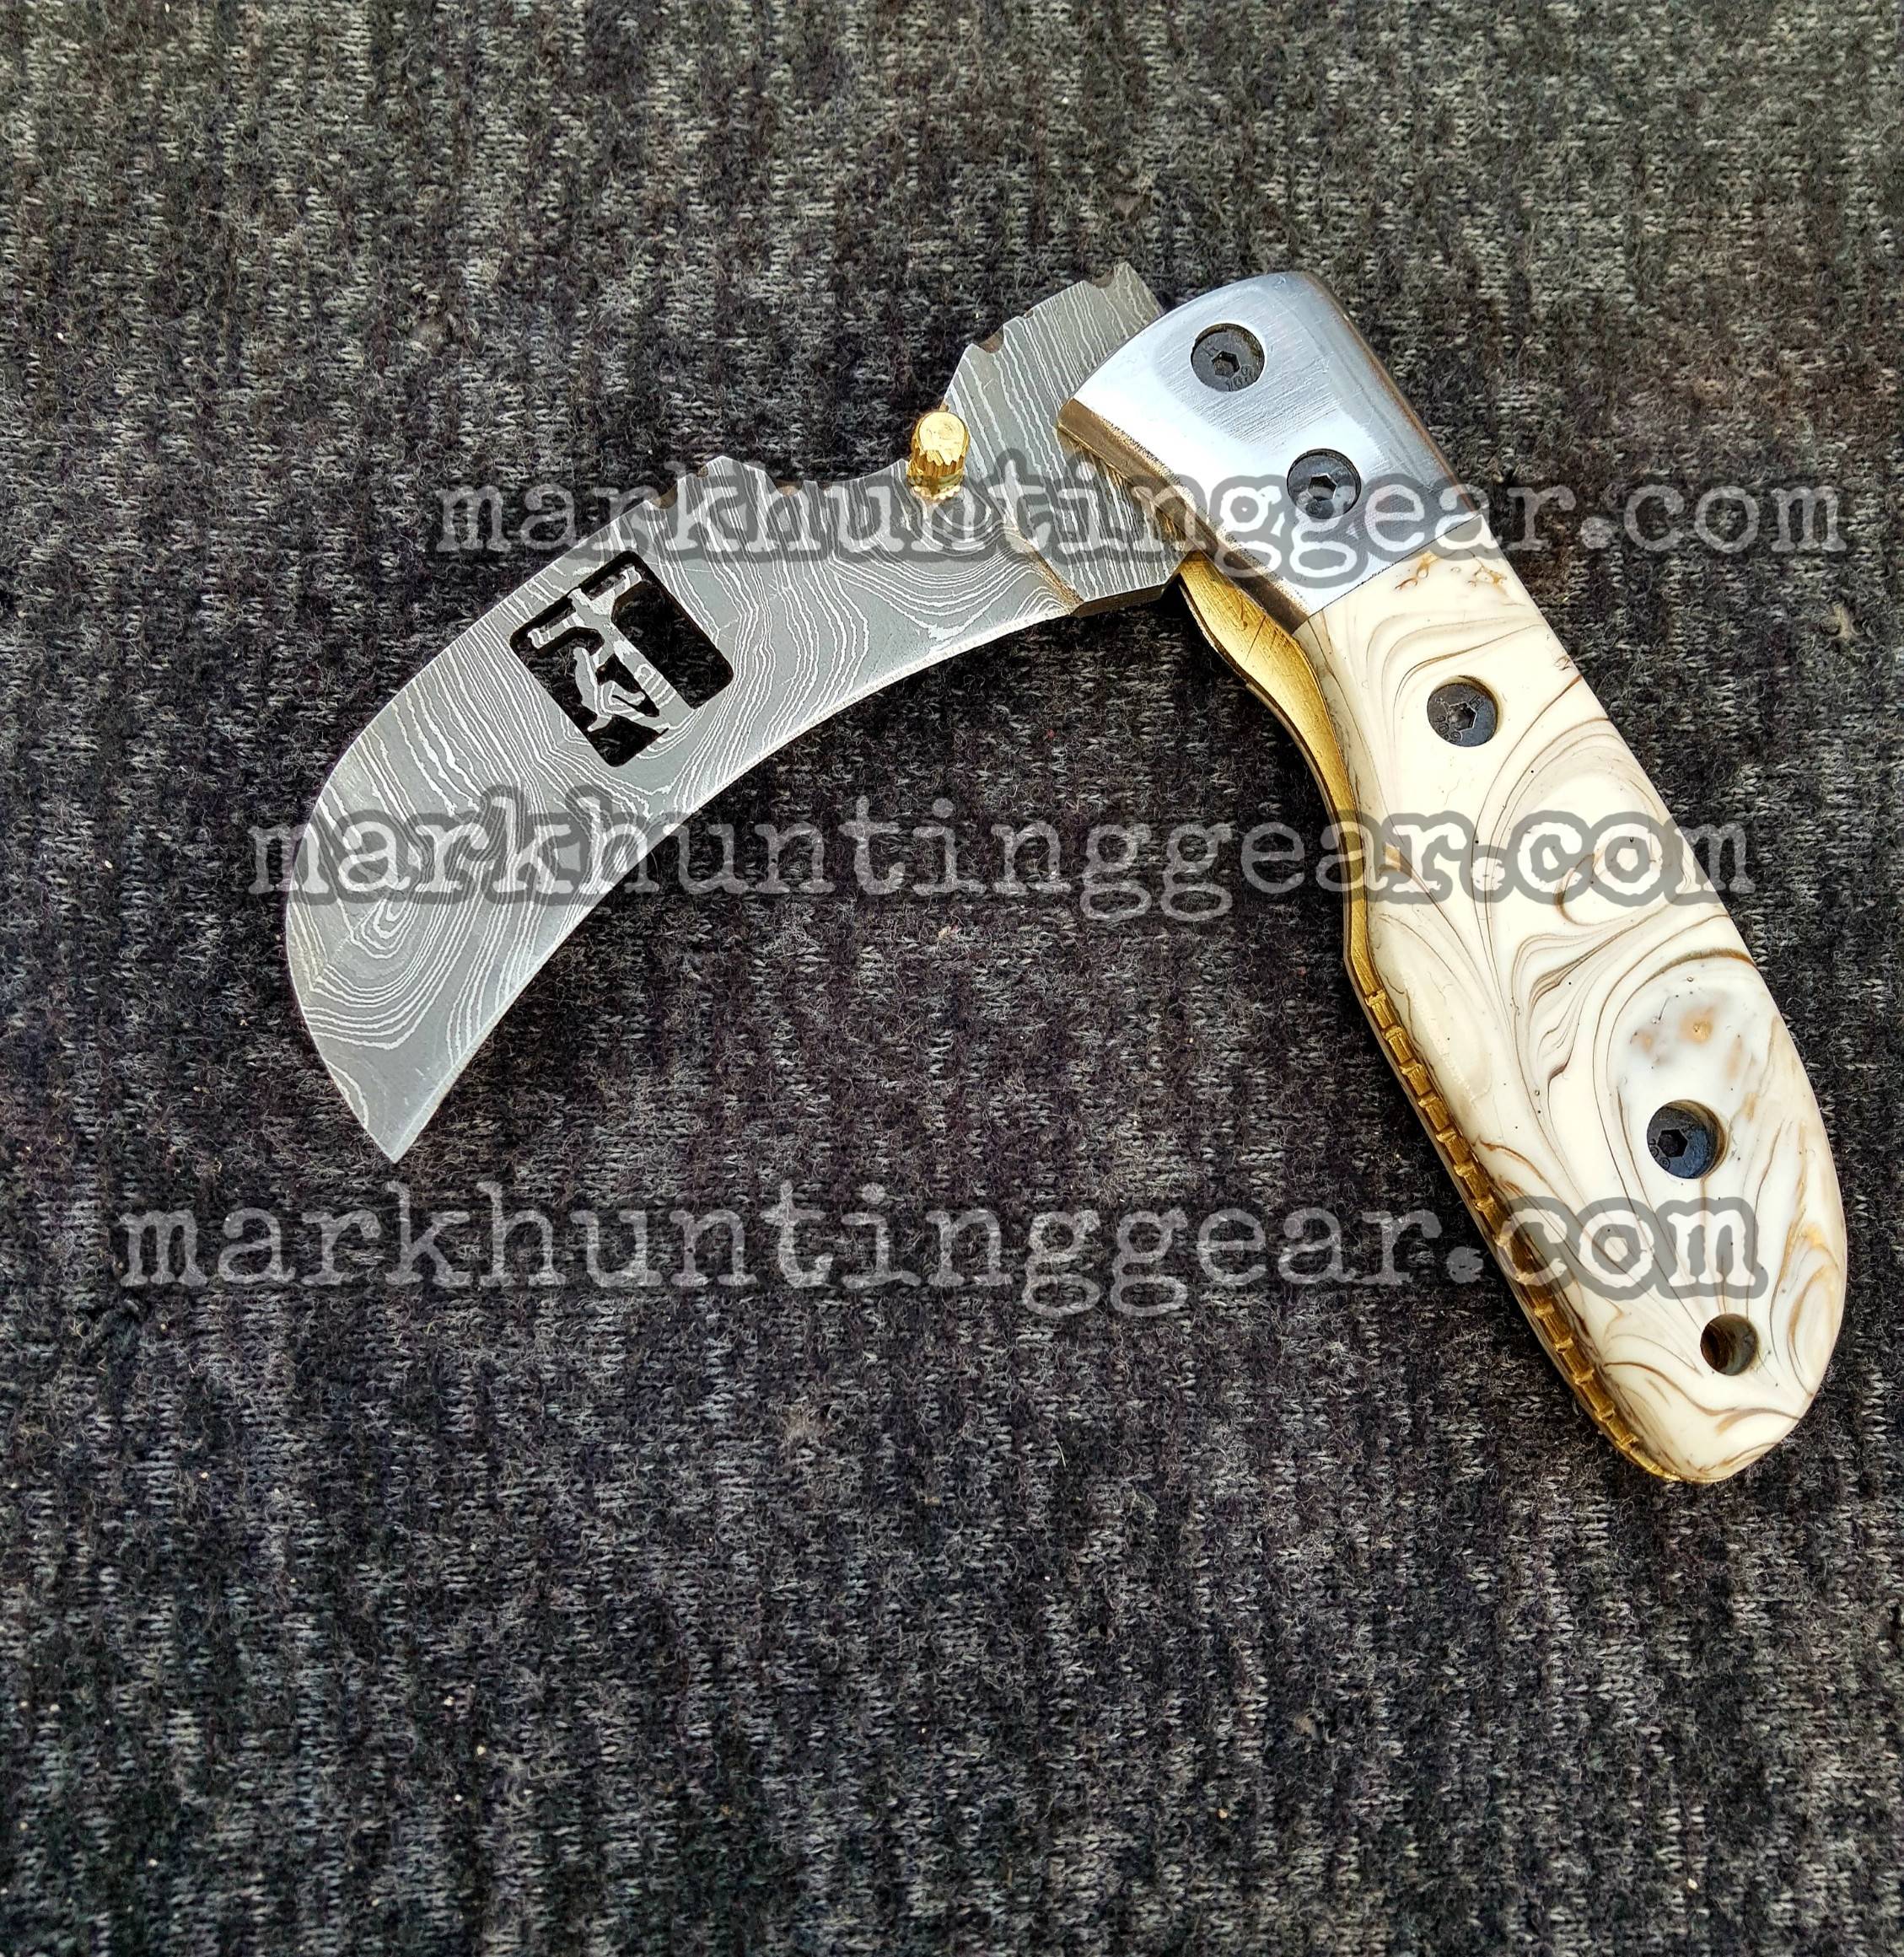 Custom Handmade Damascus Steel Hawkbill Pocket knife… | Mark Hunting Gear